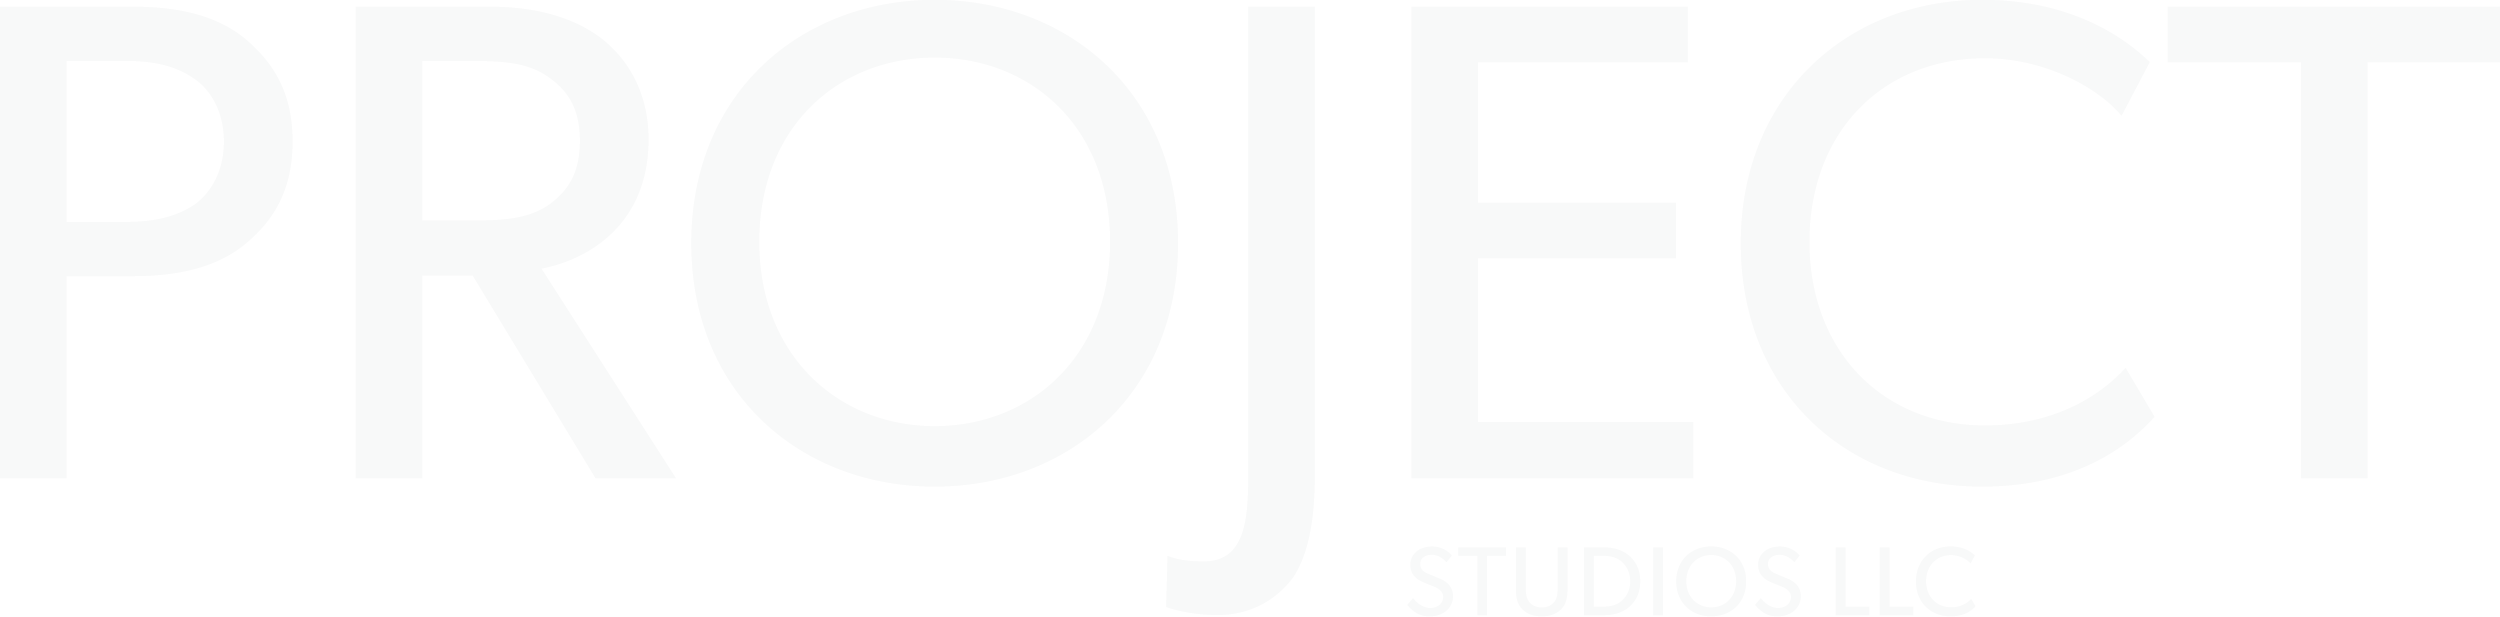 Project Studios